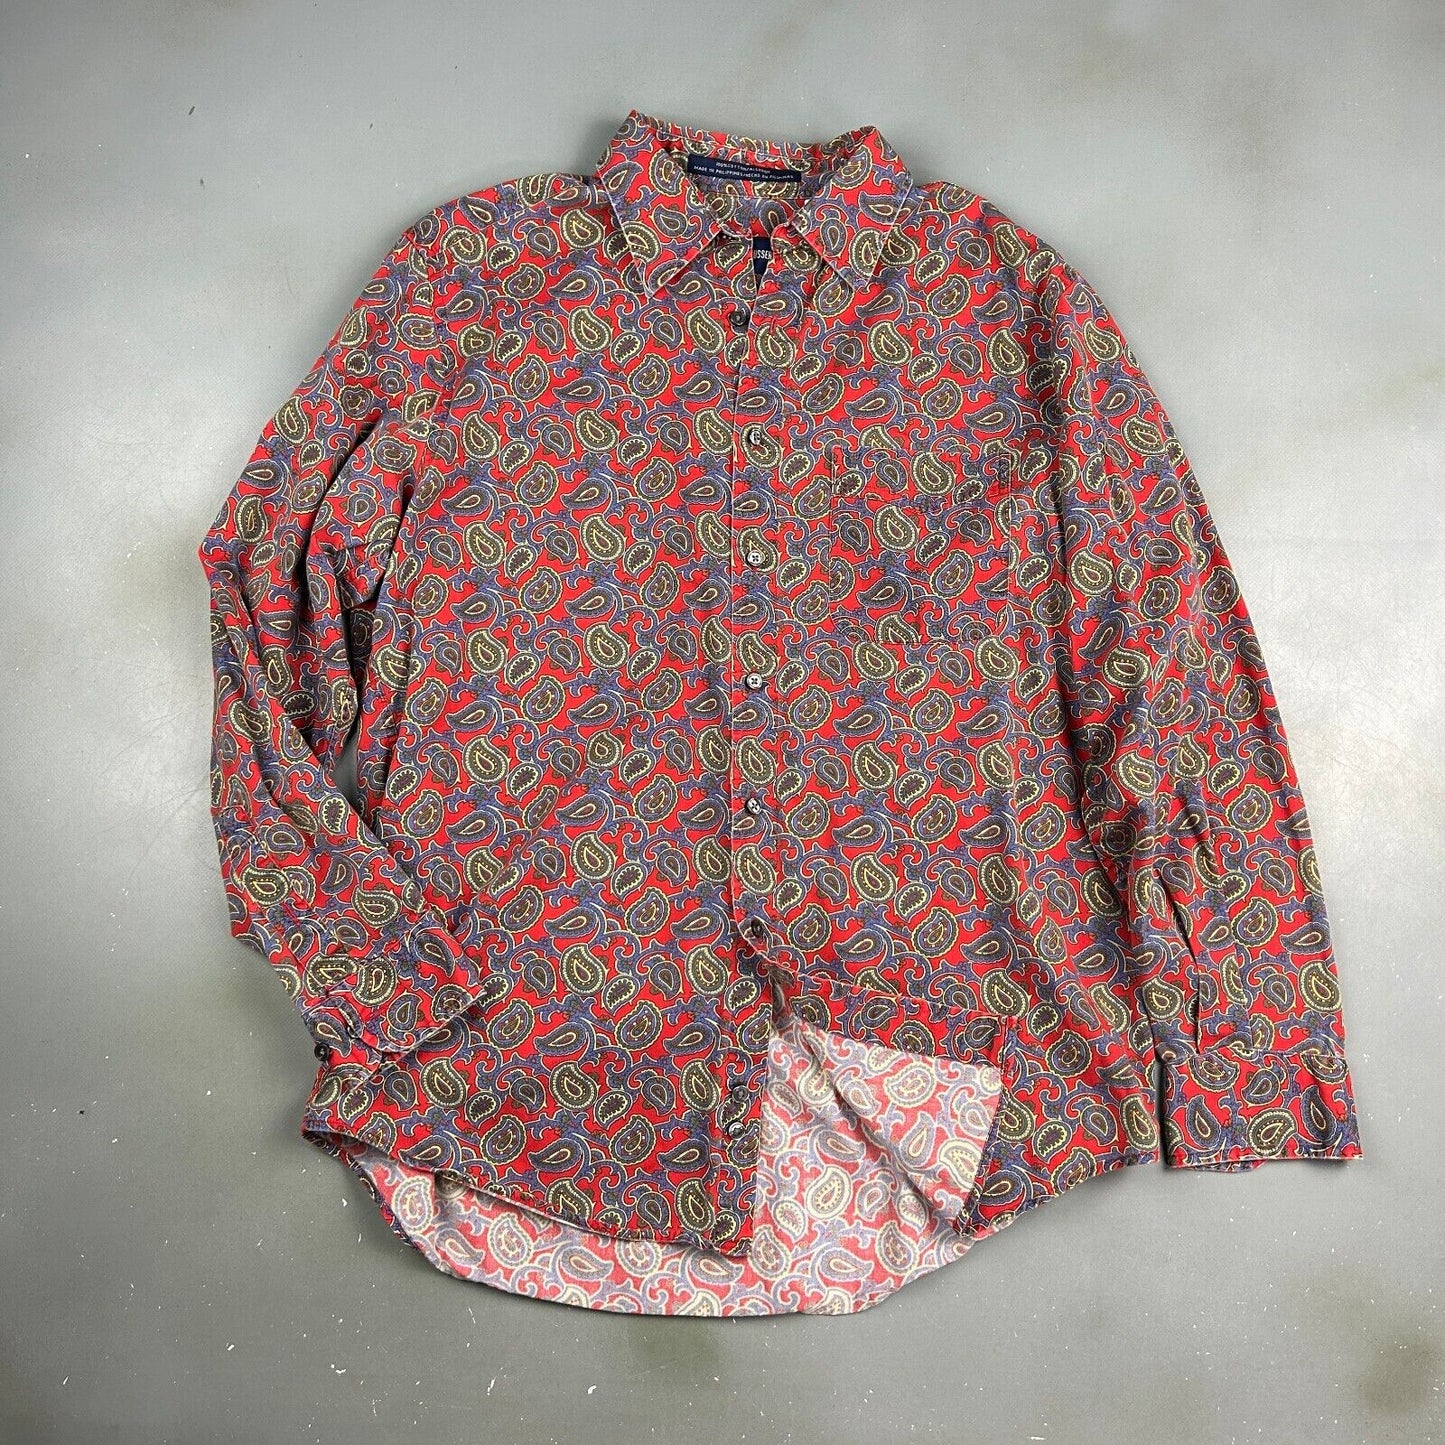 VINTAGE 90s Alan Flusser Cotton Paisley Pattern Button Up Shirt sz Medium Adult